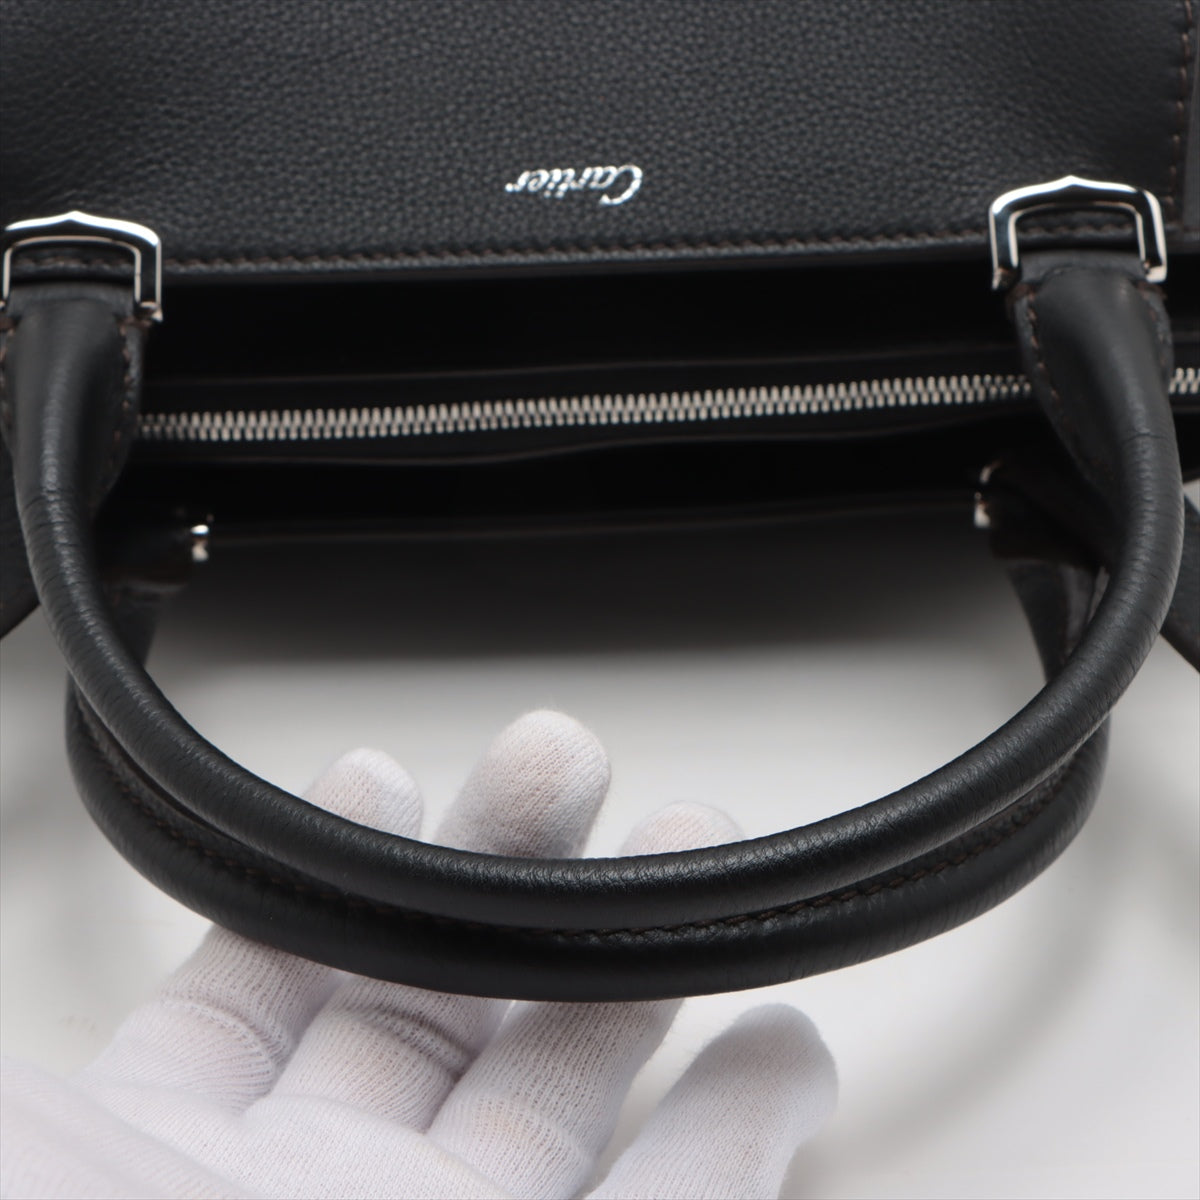 Cartier C de Cartier Leather 2 Way Handbag Black